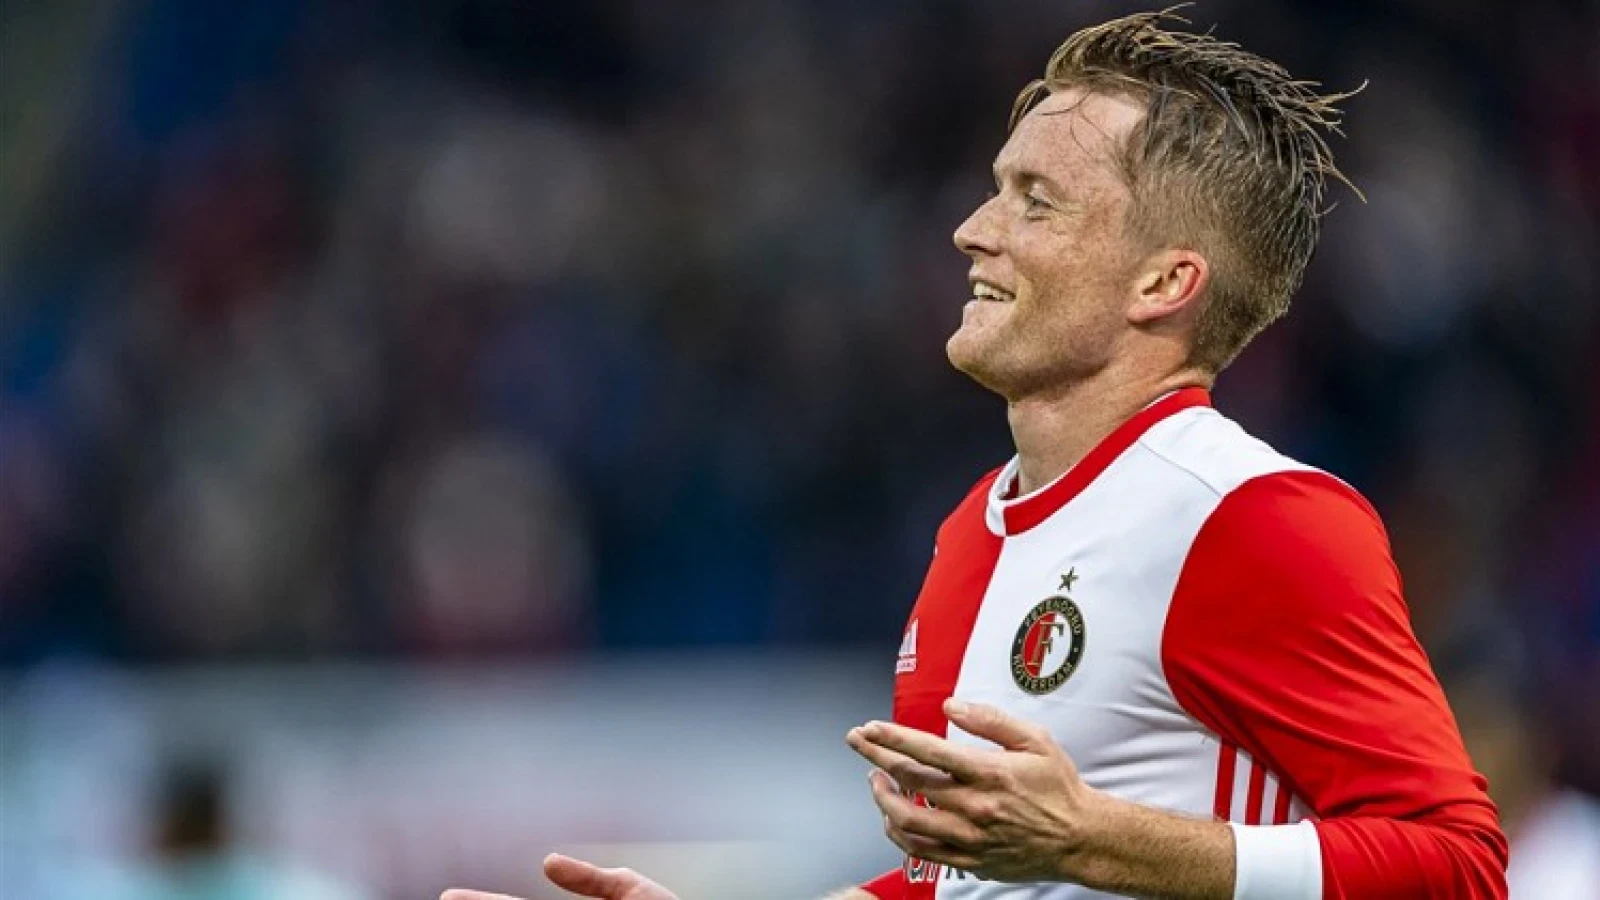 De kranten: 'Feyenoord is als een kameleon'